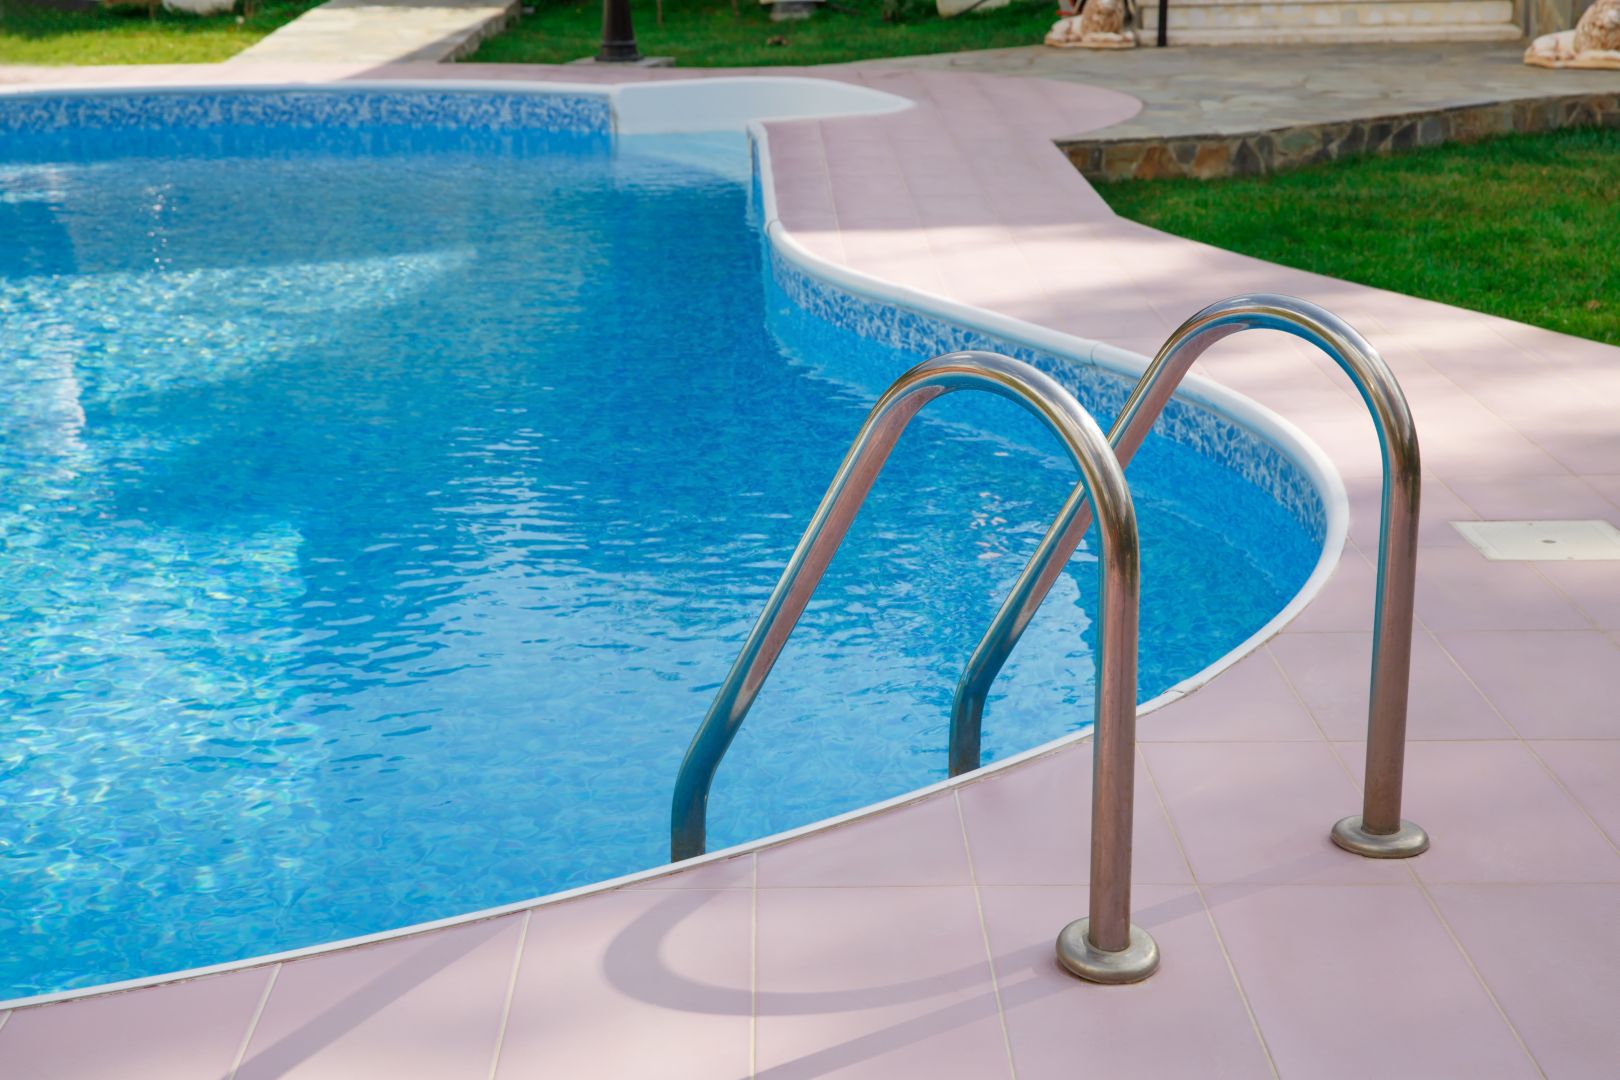 Poptávka na jarní servis zděného bazénu (Servis) - Nymburk